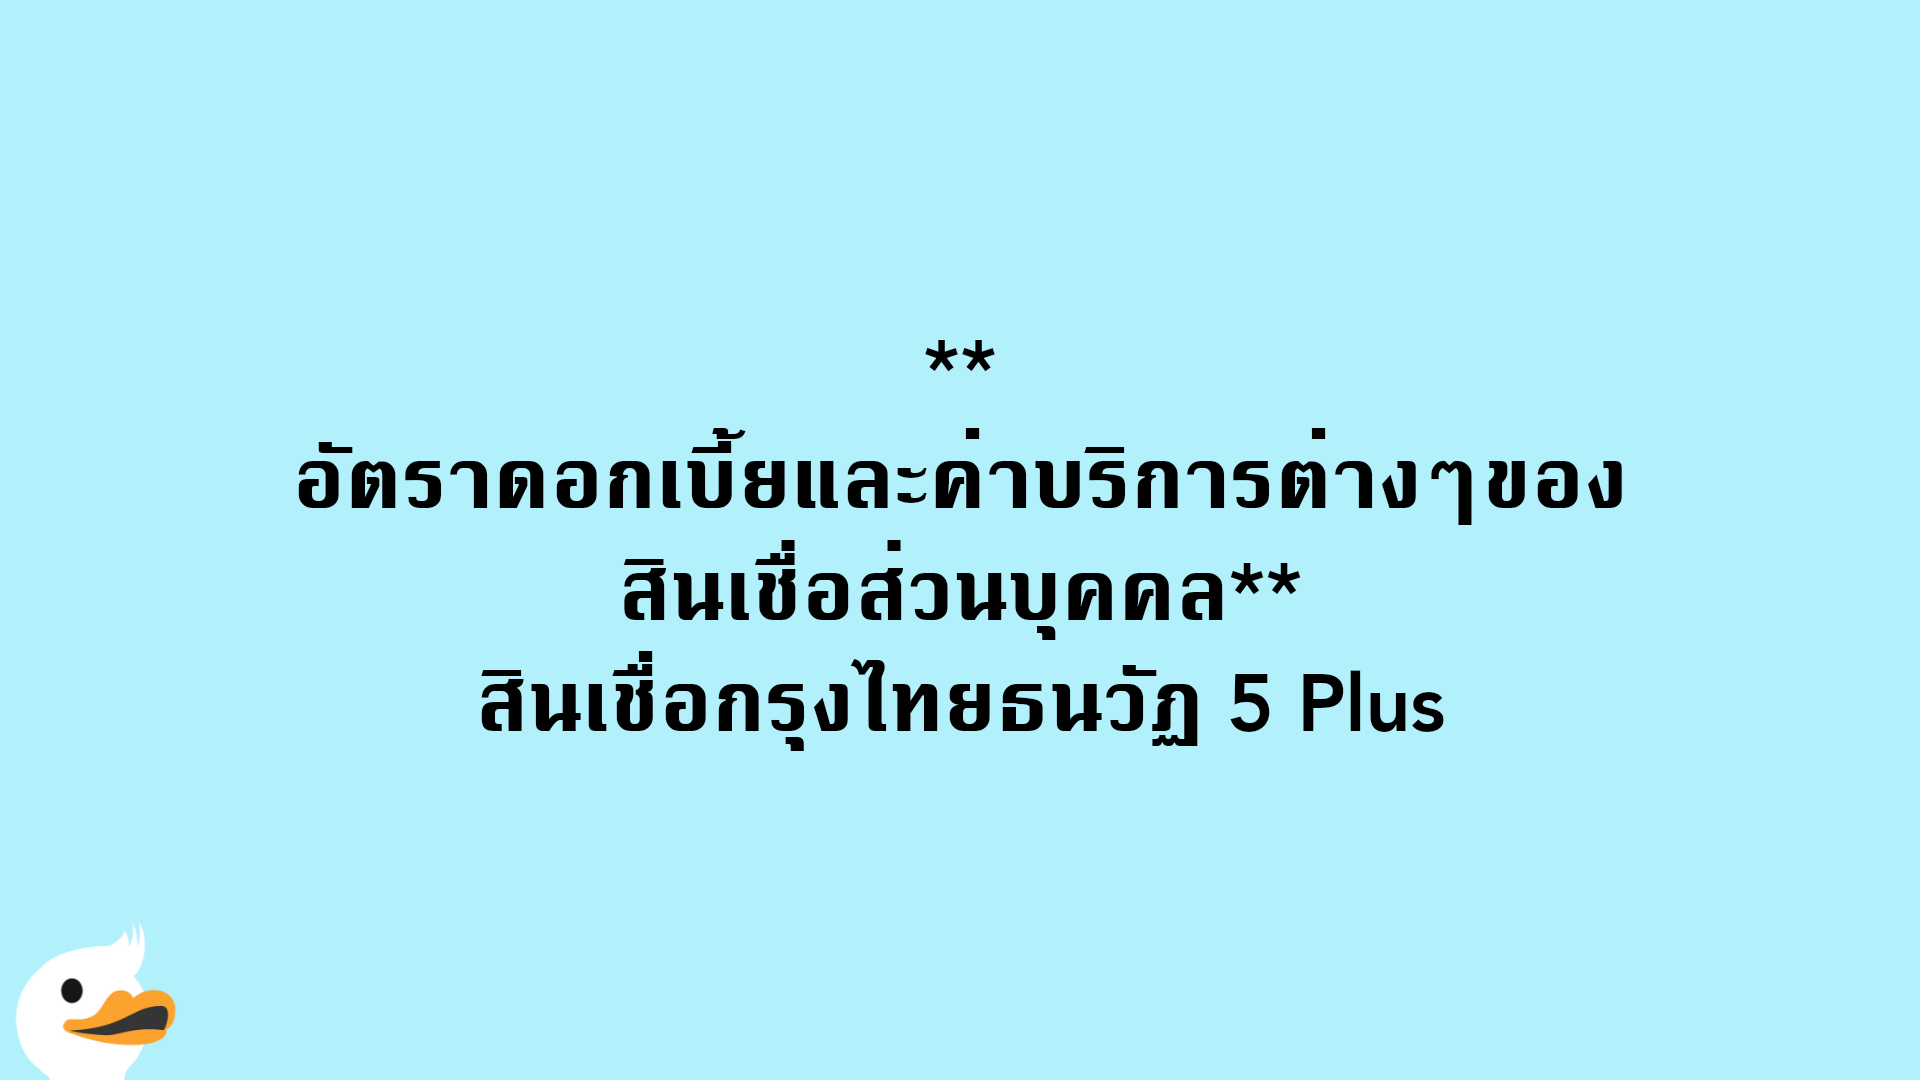 อัตราดอกเบี้ยและค่าบริการต่างๆของสินเชื่อส่วนบุคคล สินเชื่อกรุงไทยธนวัฏ 5 Plus